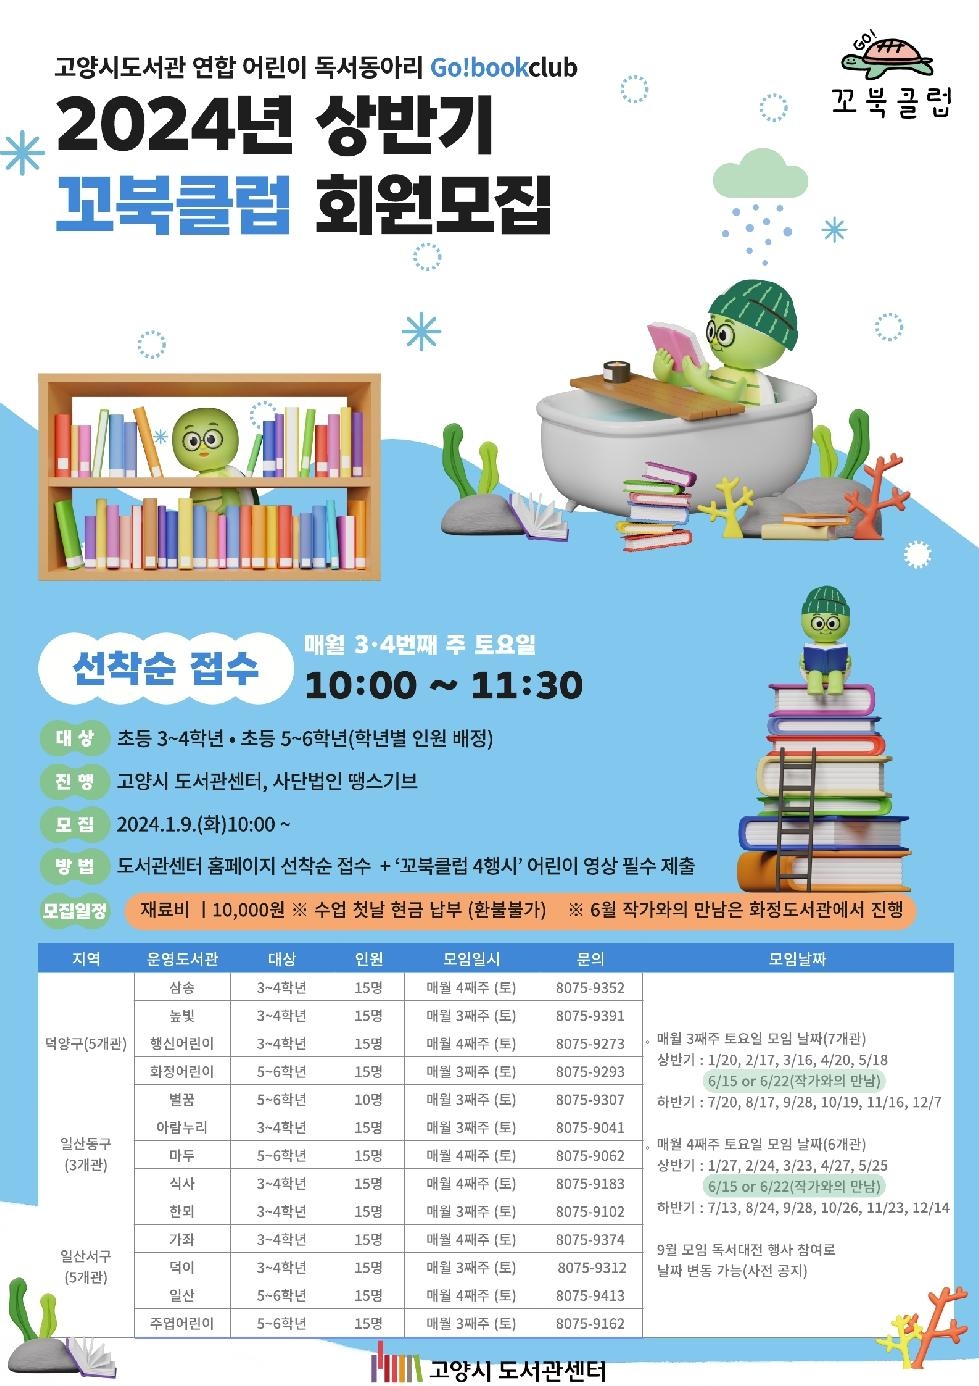 고양시도서관, 연합어린이독서동아리  ‘꼬북클럽(Go! Bookclub)’